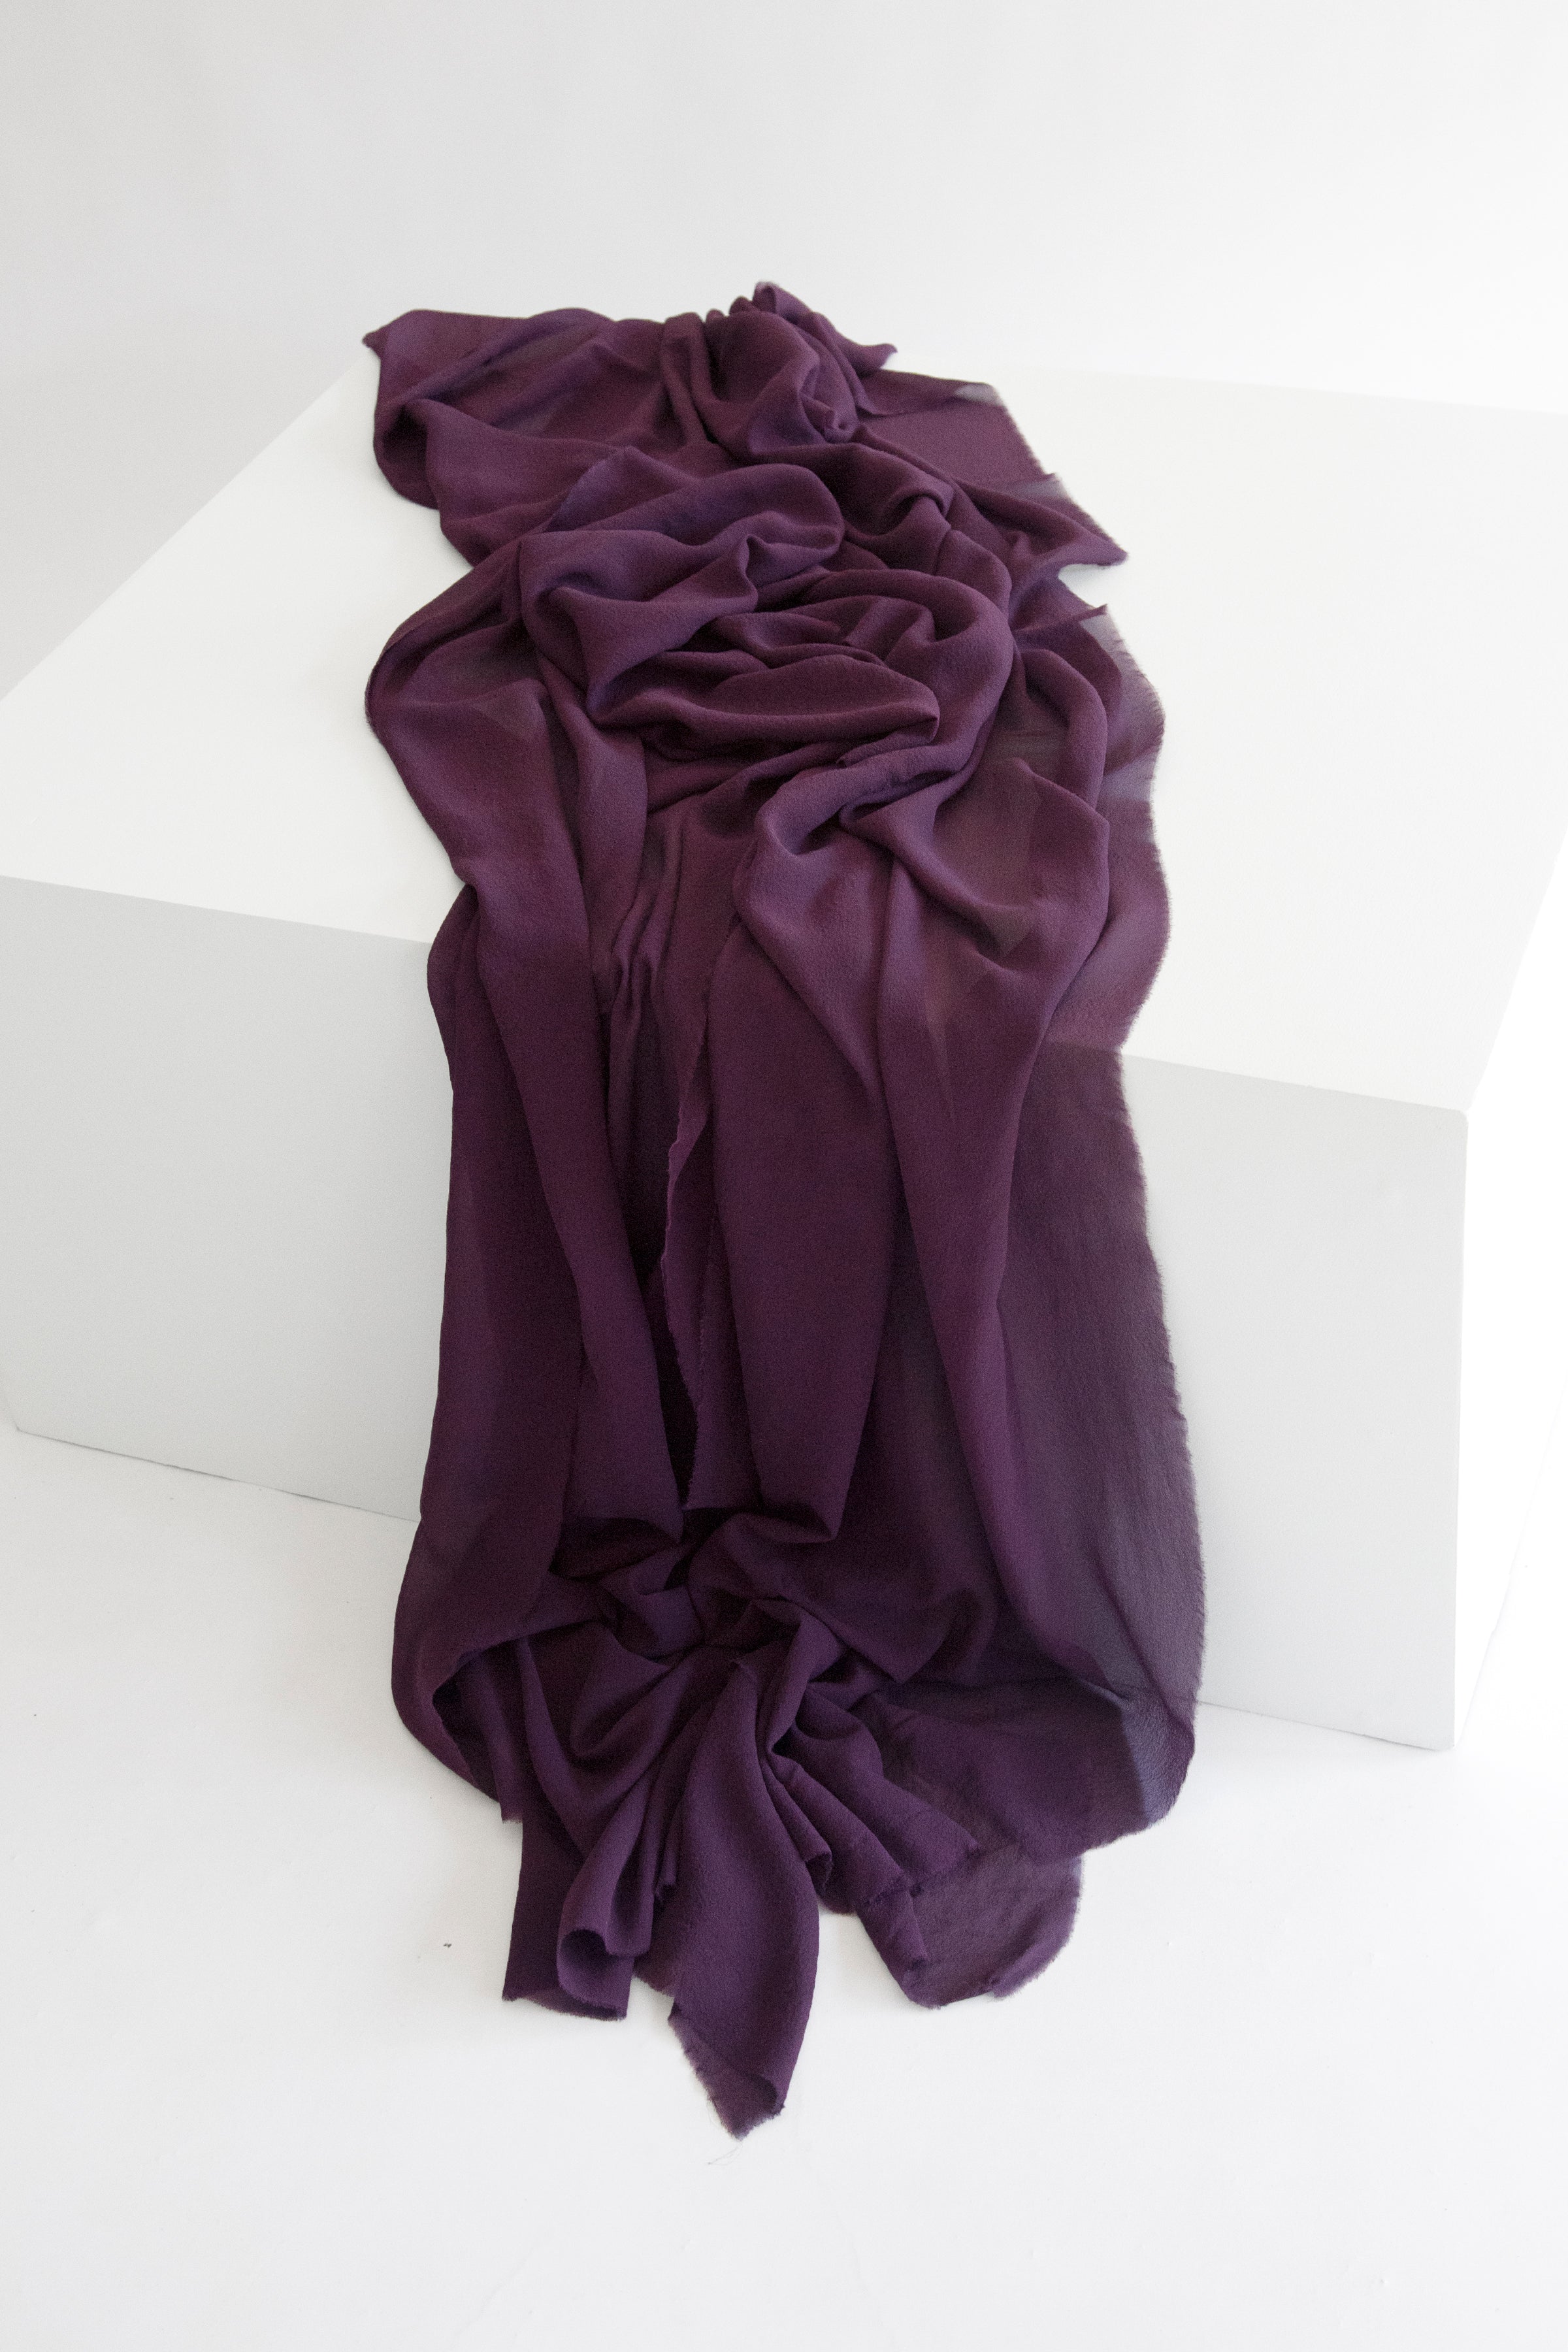 Silk Classic Textile in Aubergine – Tono + co